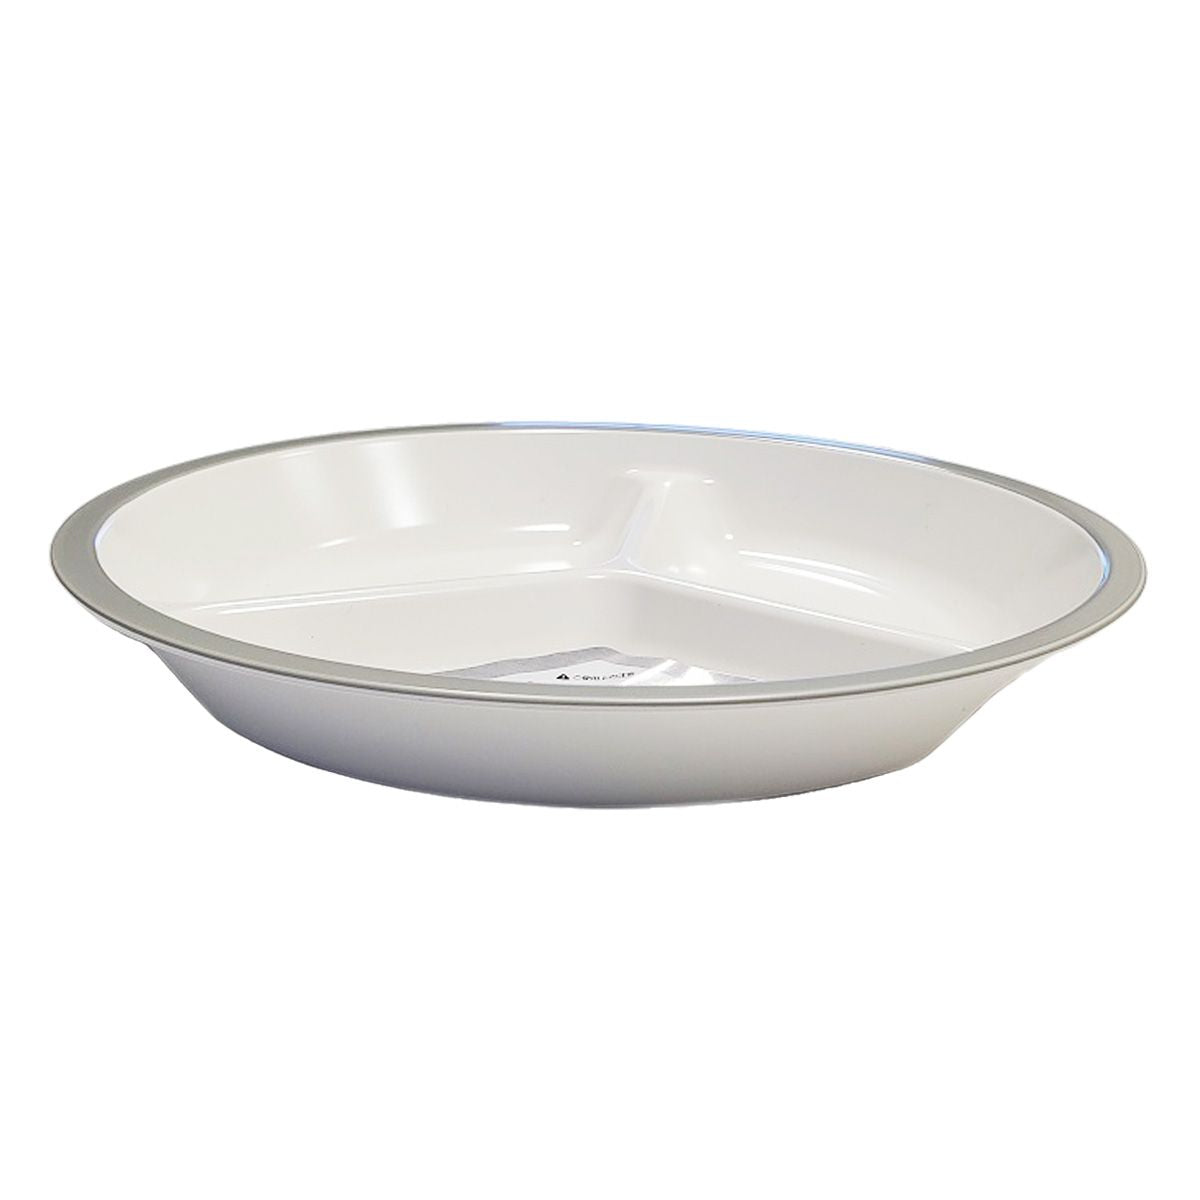 皿 仕切り皿 撥水ミニランチプレート ワンプレートご飯 グレー 9001/342027